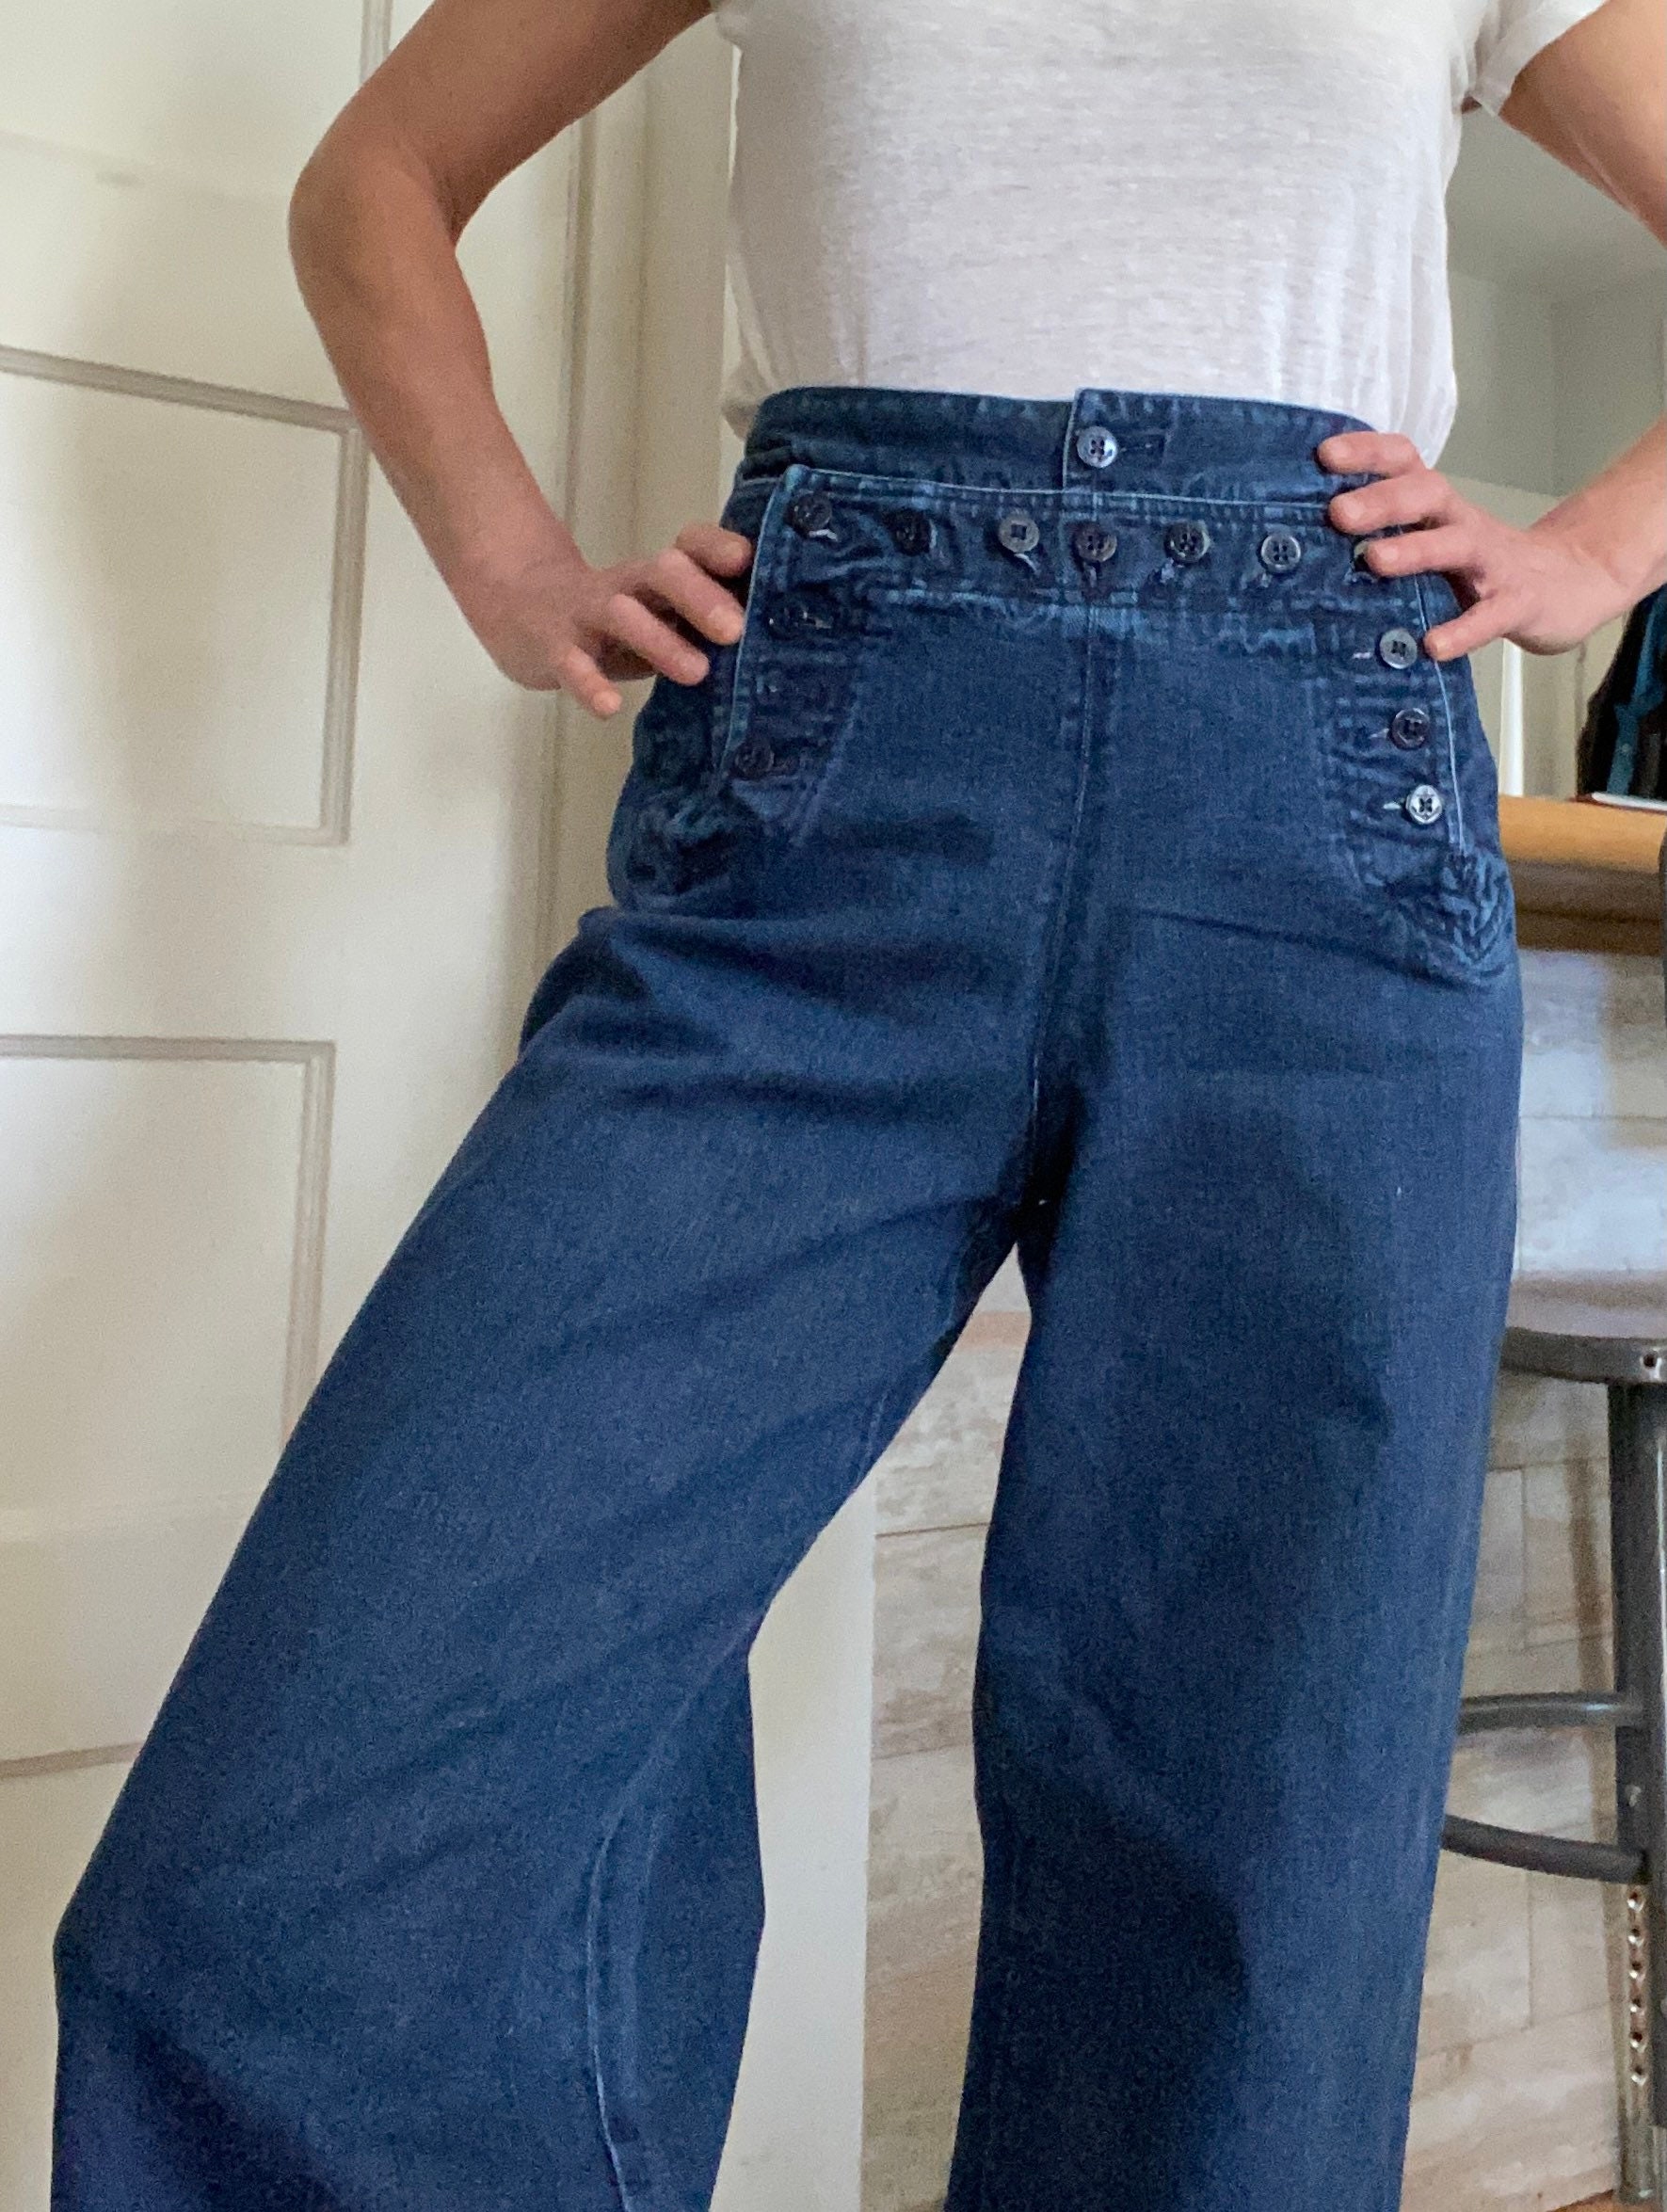 Ralph Lauren sailor jeans High waist wide leg bell bottom | Etsy